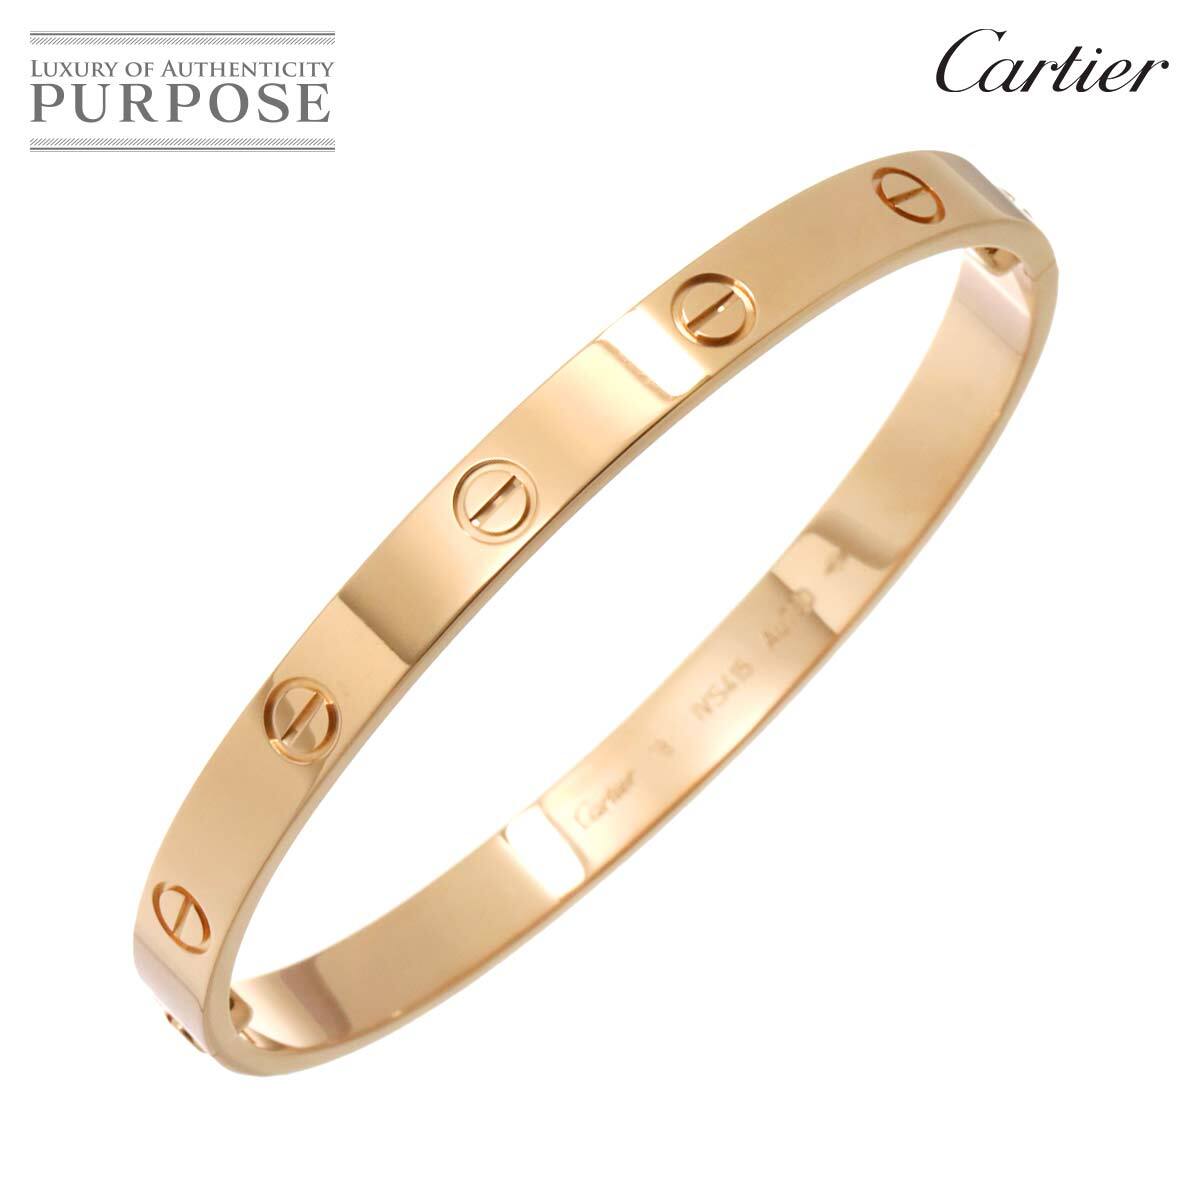 カルティエ Cartier ラブ ブレス #18 K18 PG ピンクゴールド 750 ブレスレット バングル Love Bracelet 【証明書付き】 90221366